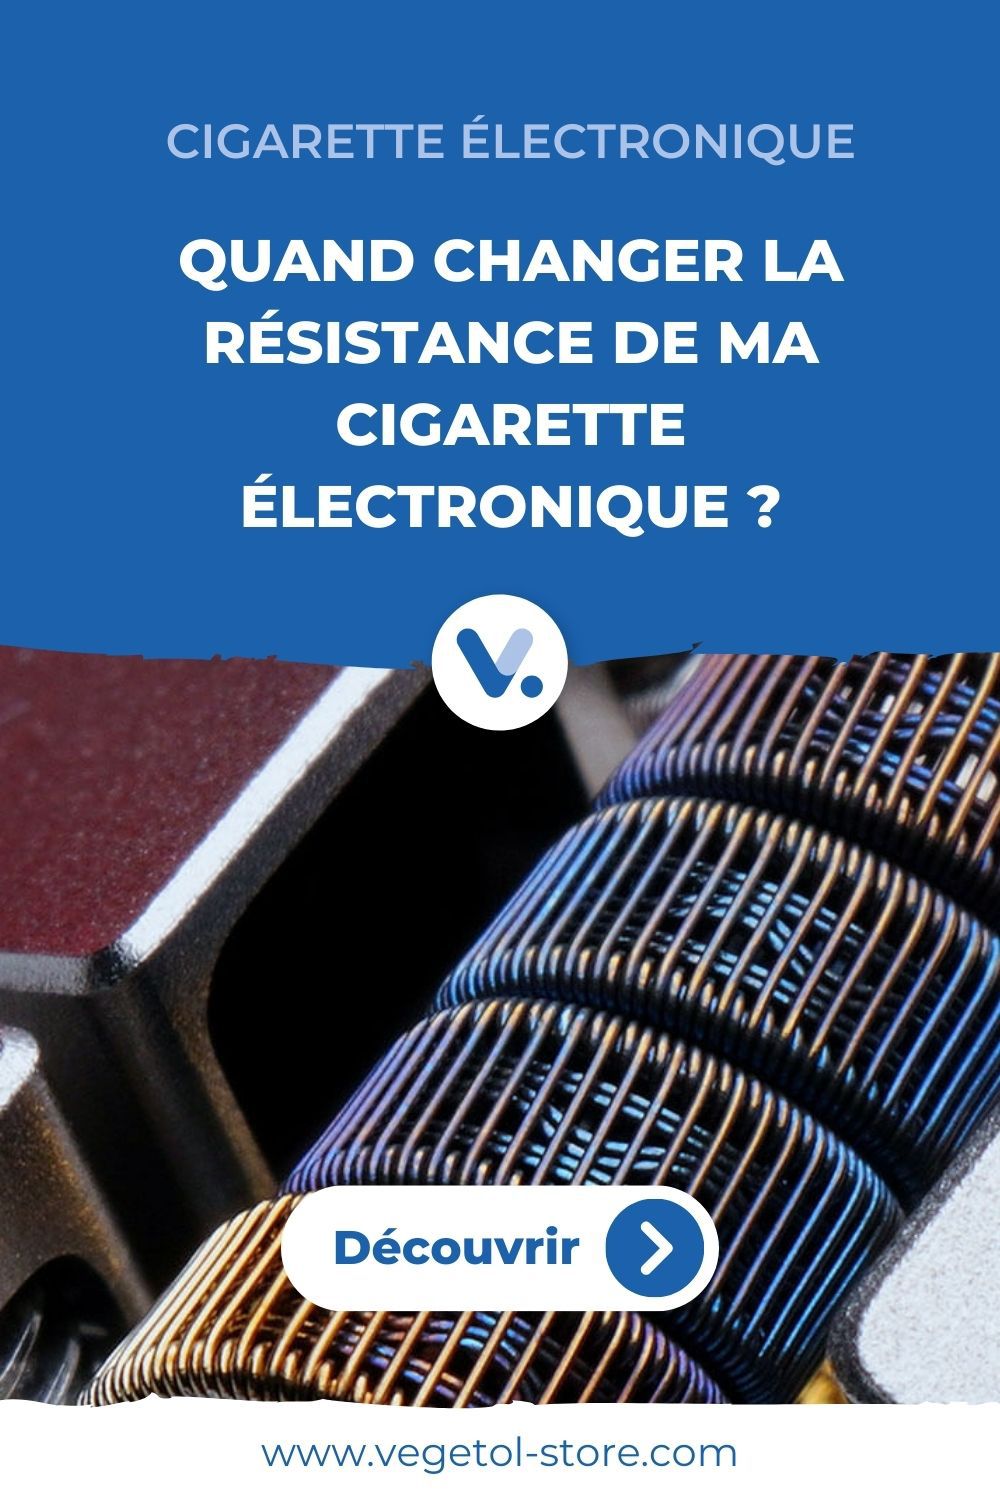 cigarette-electronique-resistance-changement